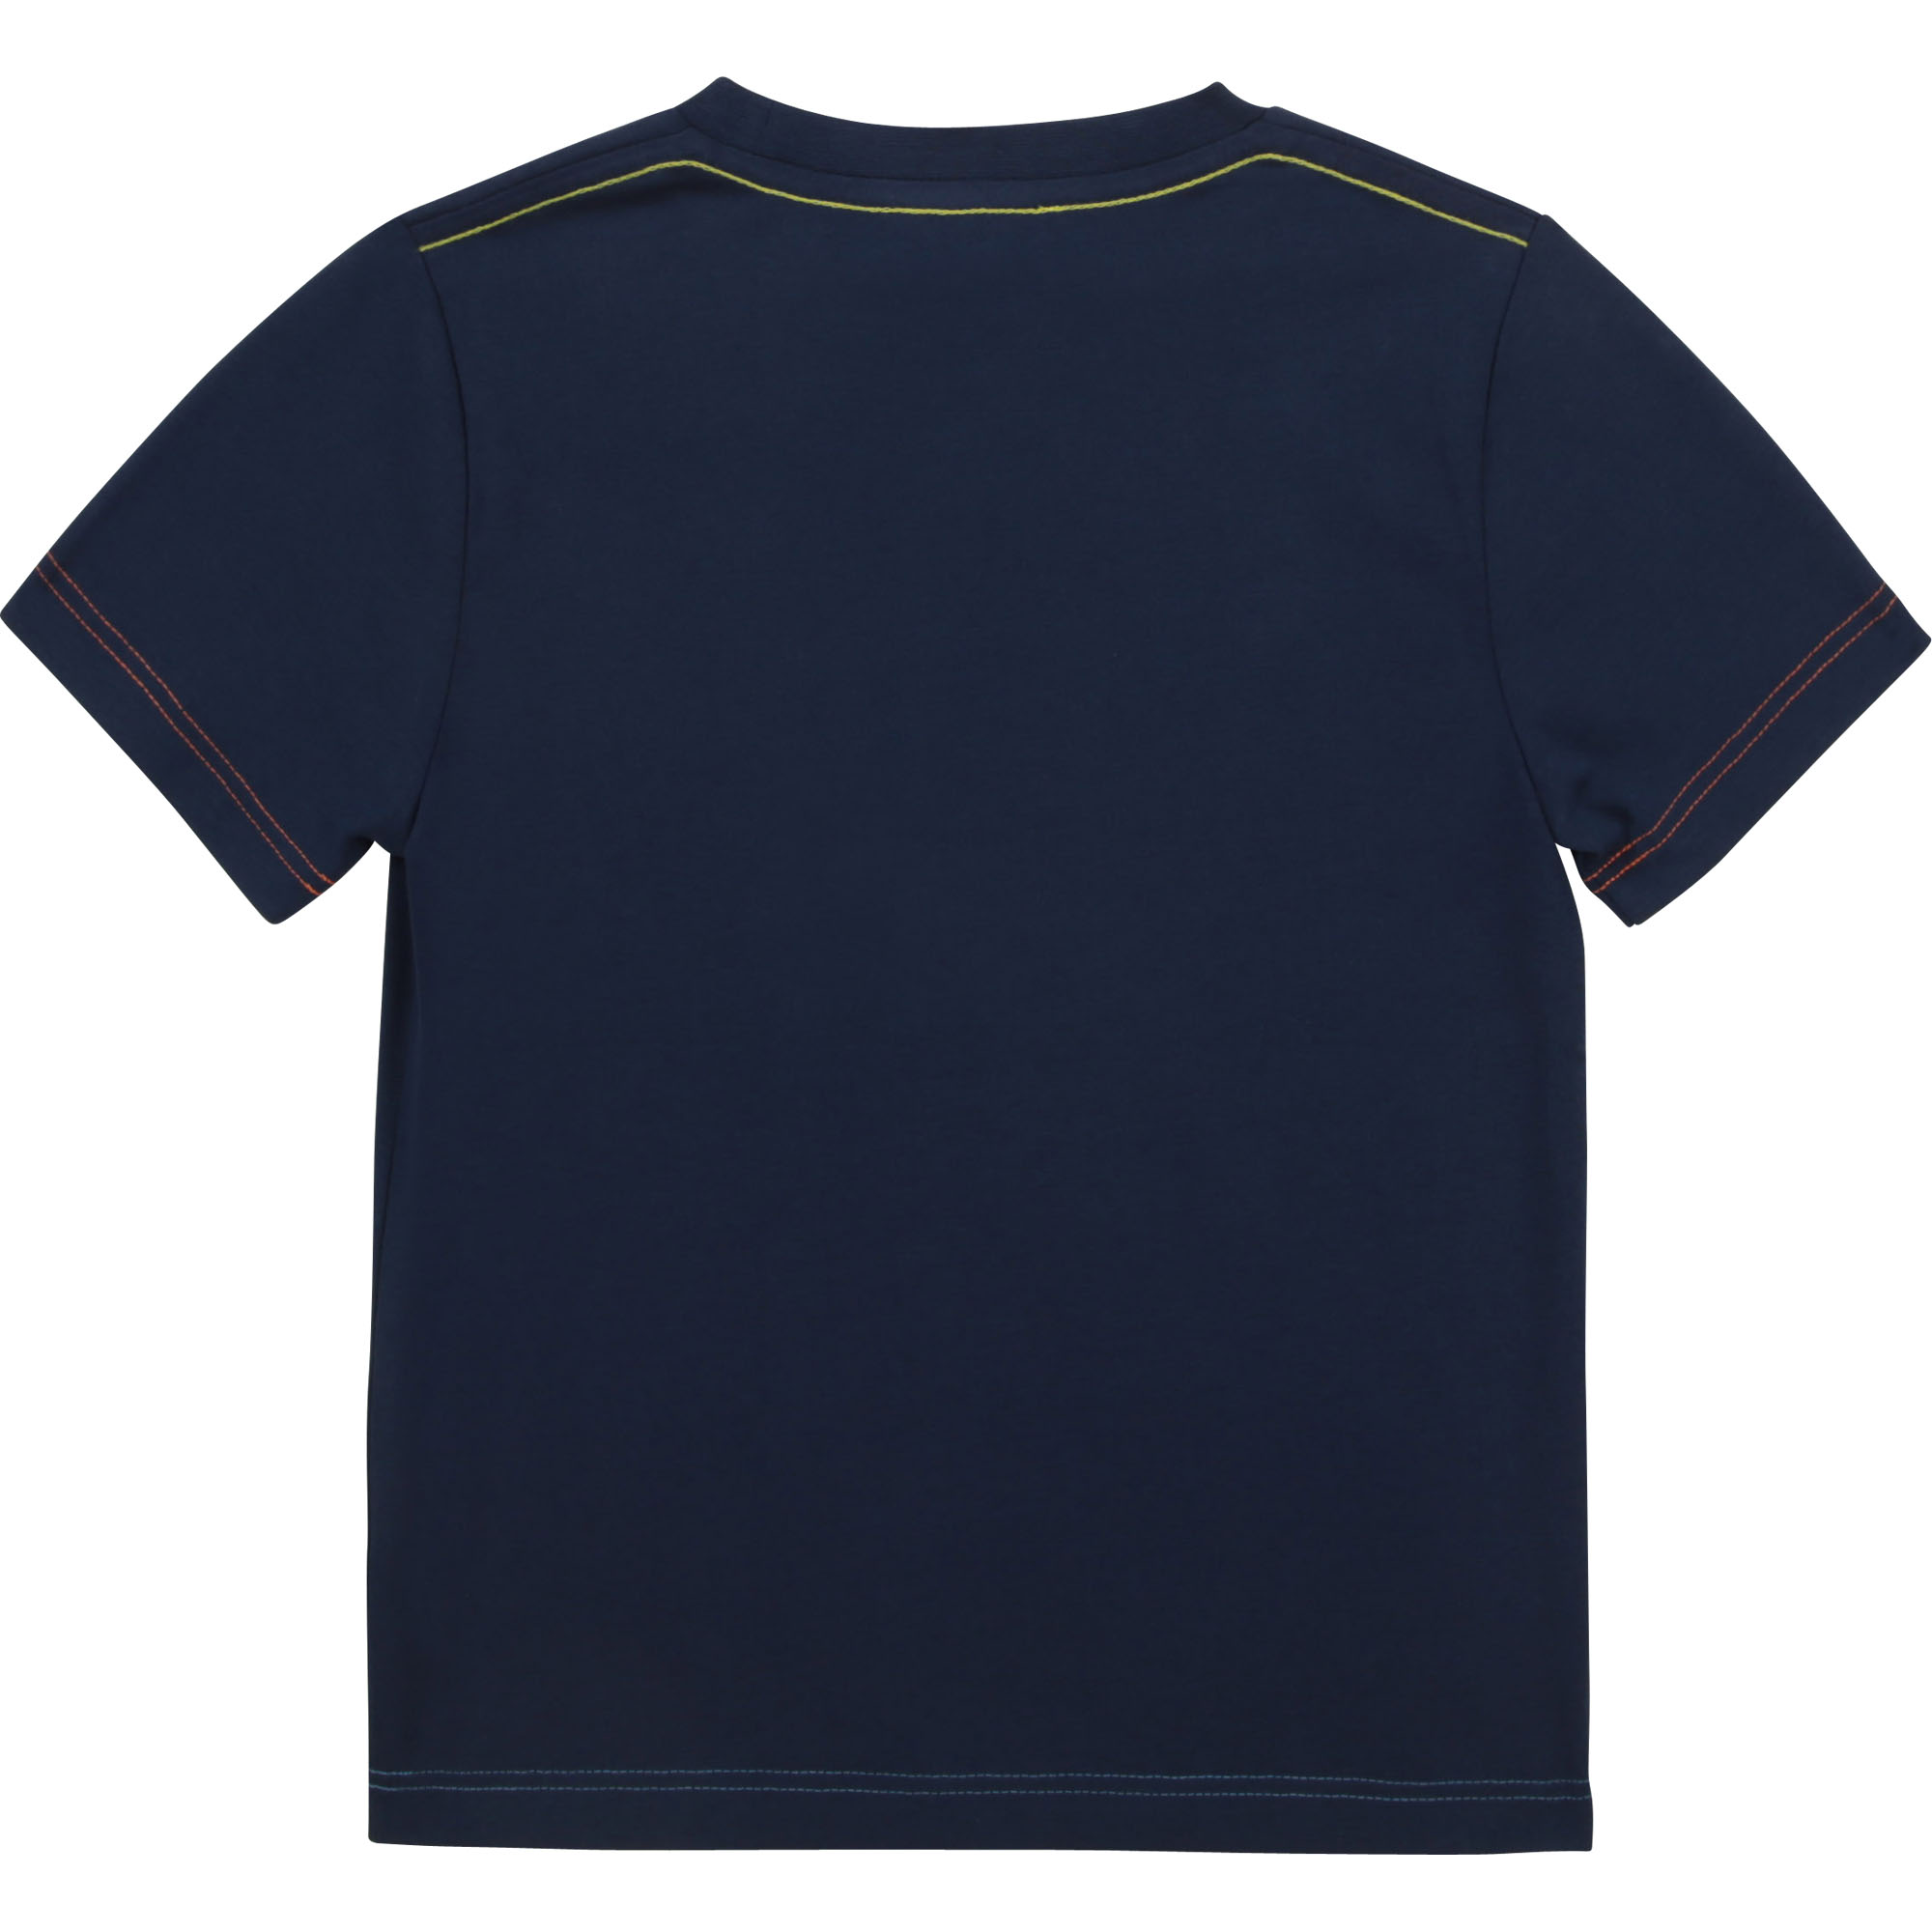 T-shirt in jersey di cotone MARC JACOBS Per RAGAZZO